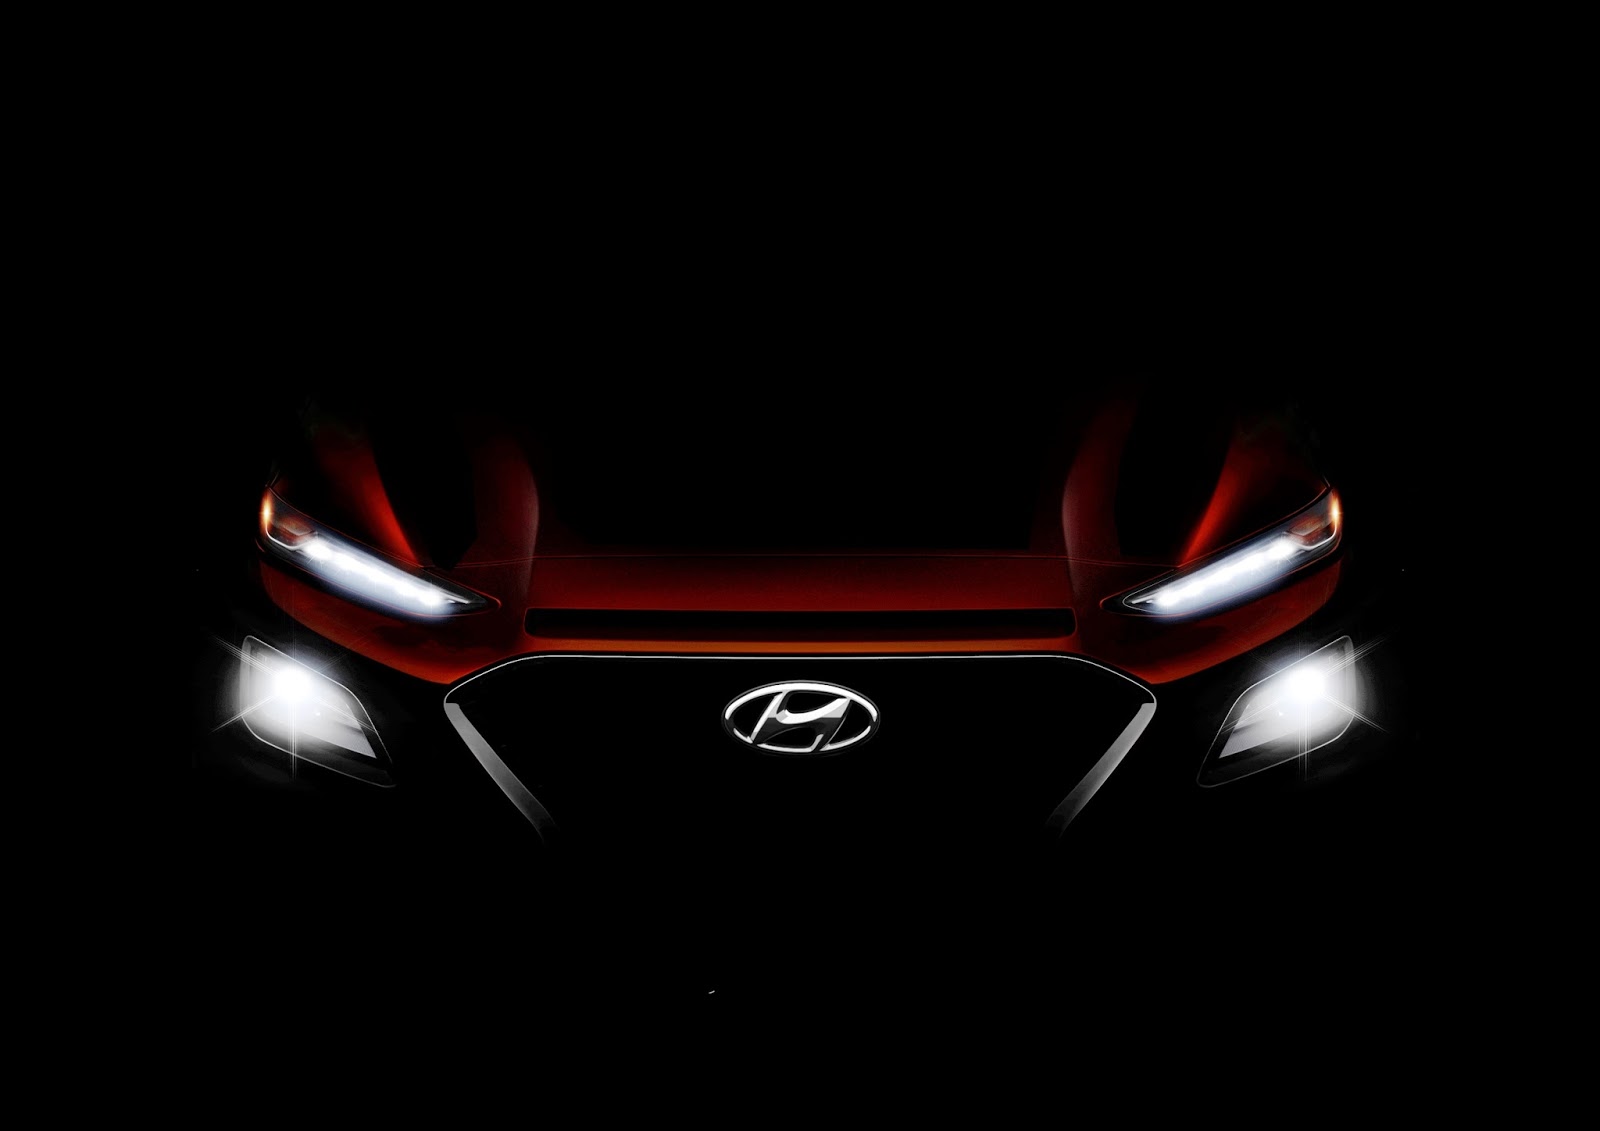 The2BAll New2BHyundai2BKona2B 2BSleek252C2Bsharp2Band2Bprogressive Το KONA μας προϊδεάζει για τη νέα σχεδιαστική ταυτότητα της Hyundai